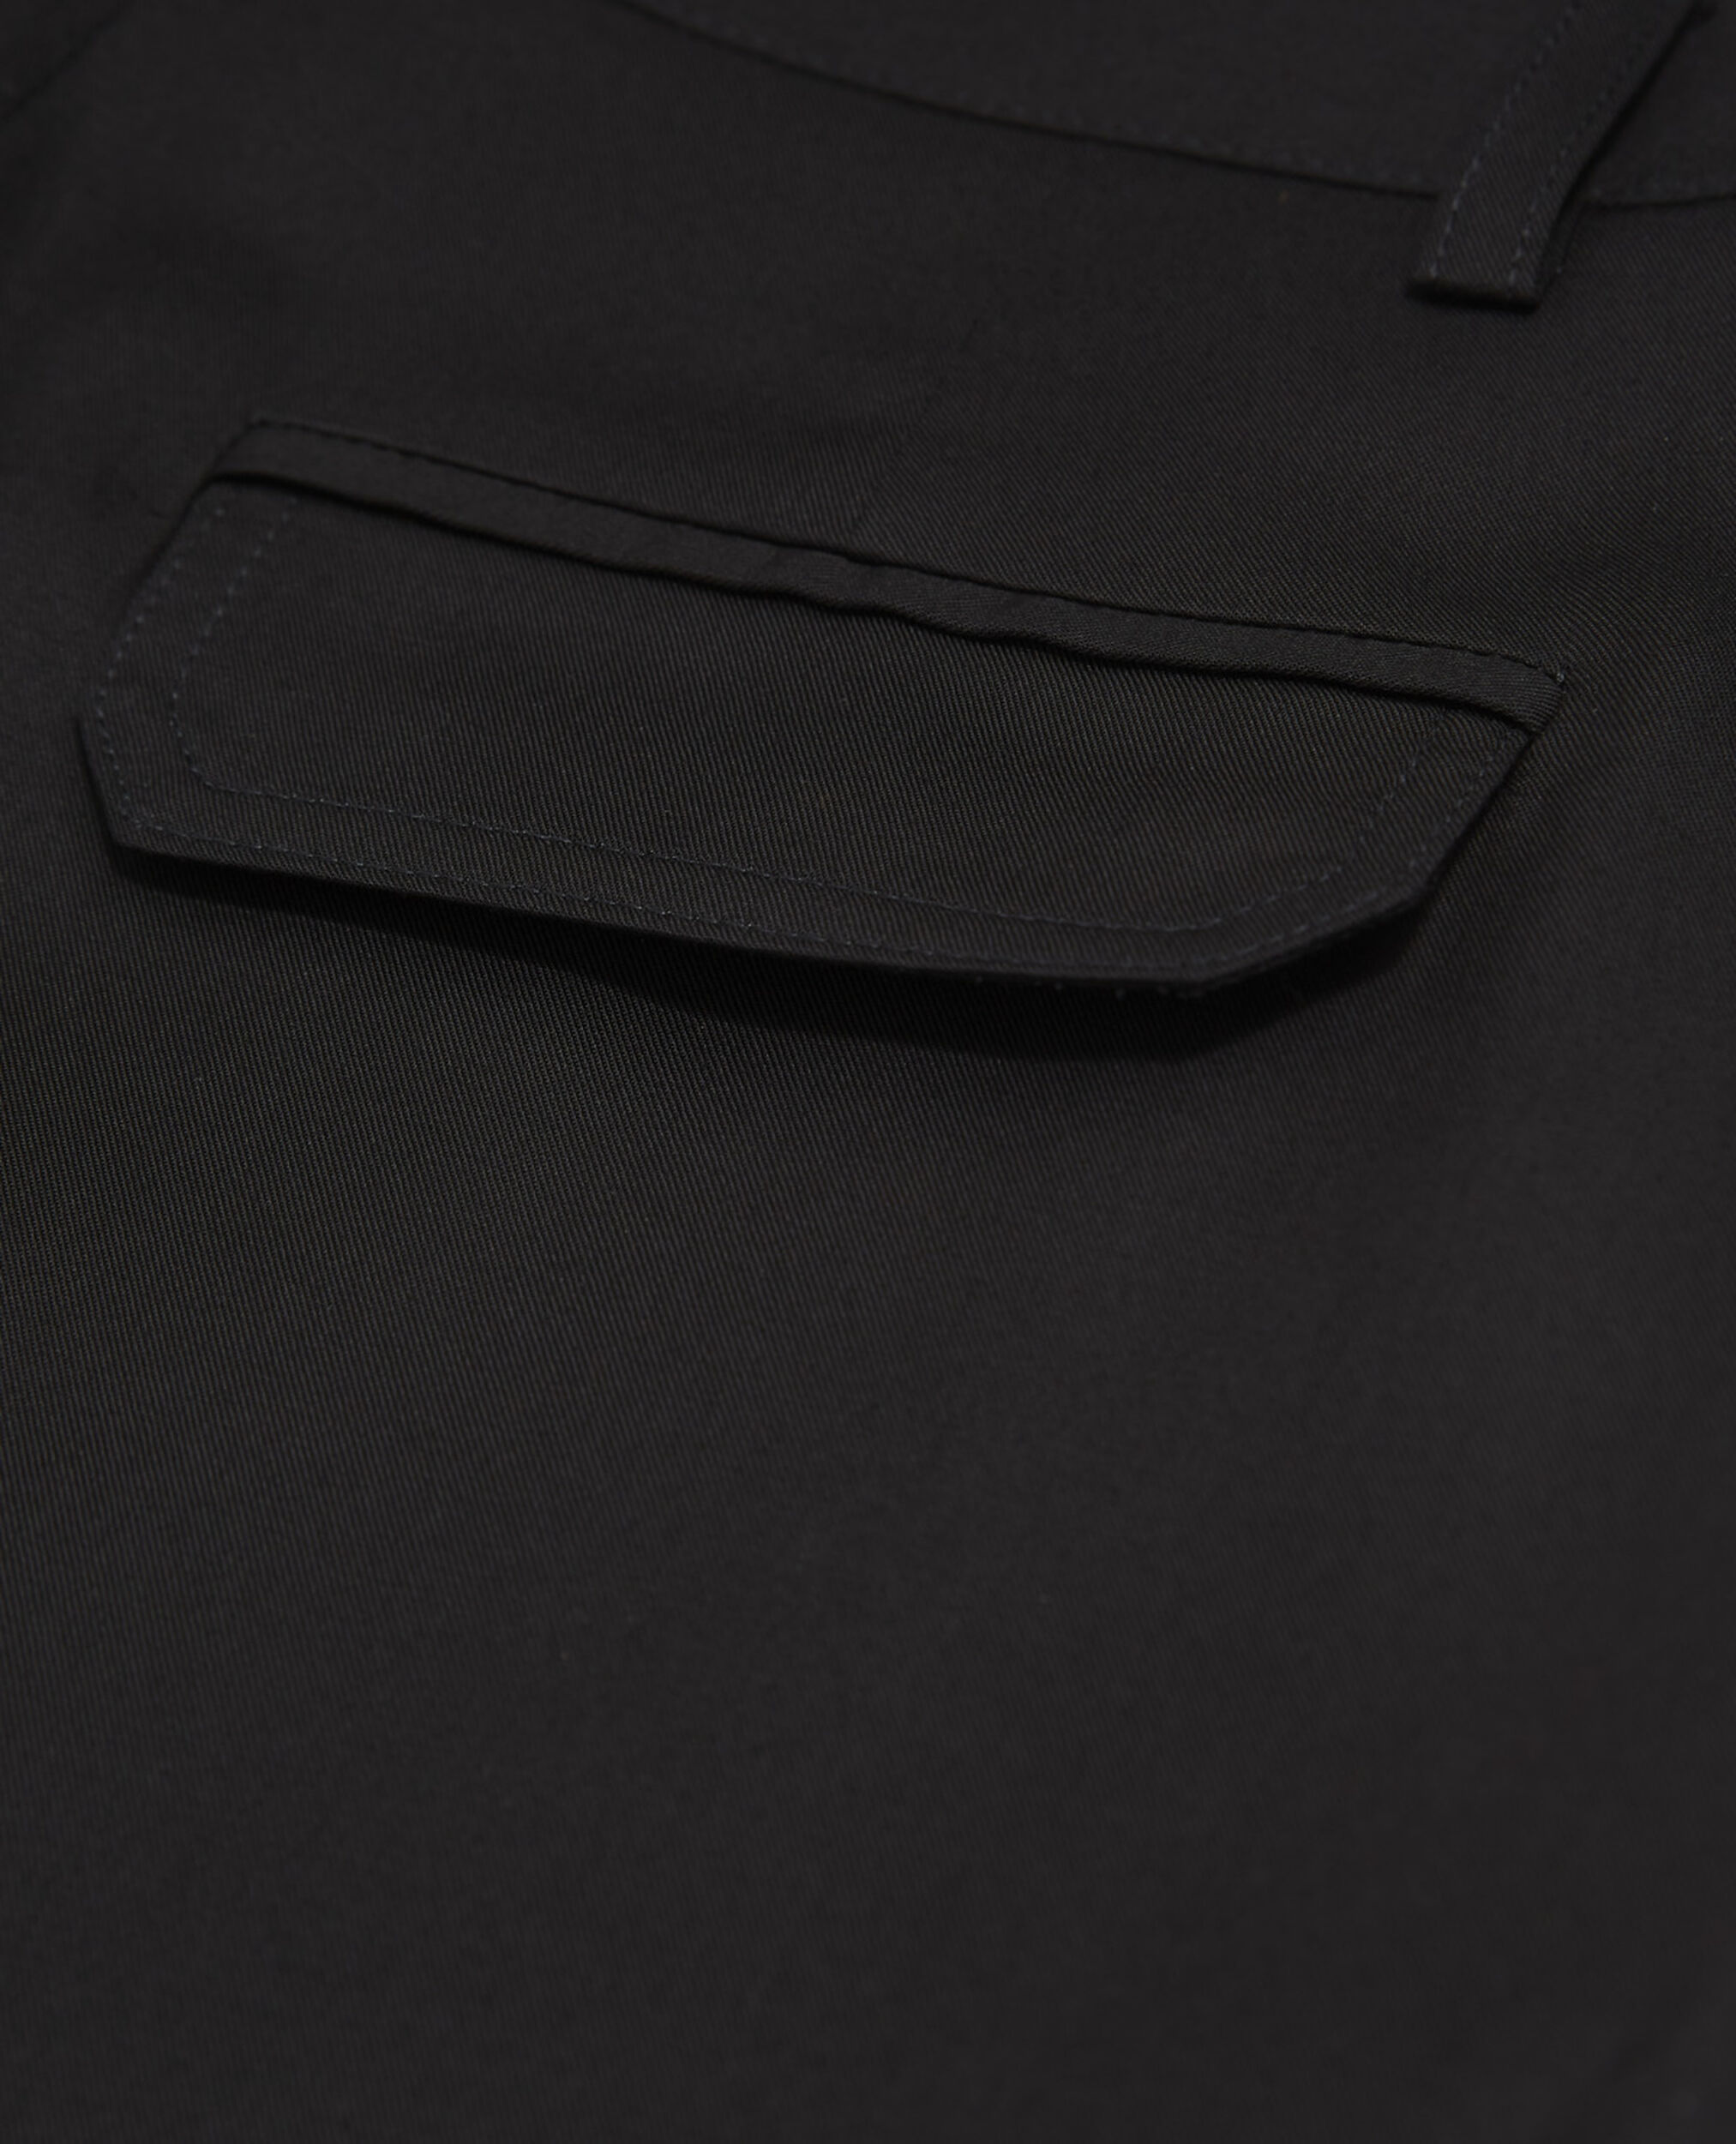 Pantalon noir tencel style militaire, BLACK, hi-res image number null